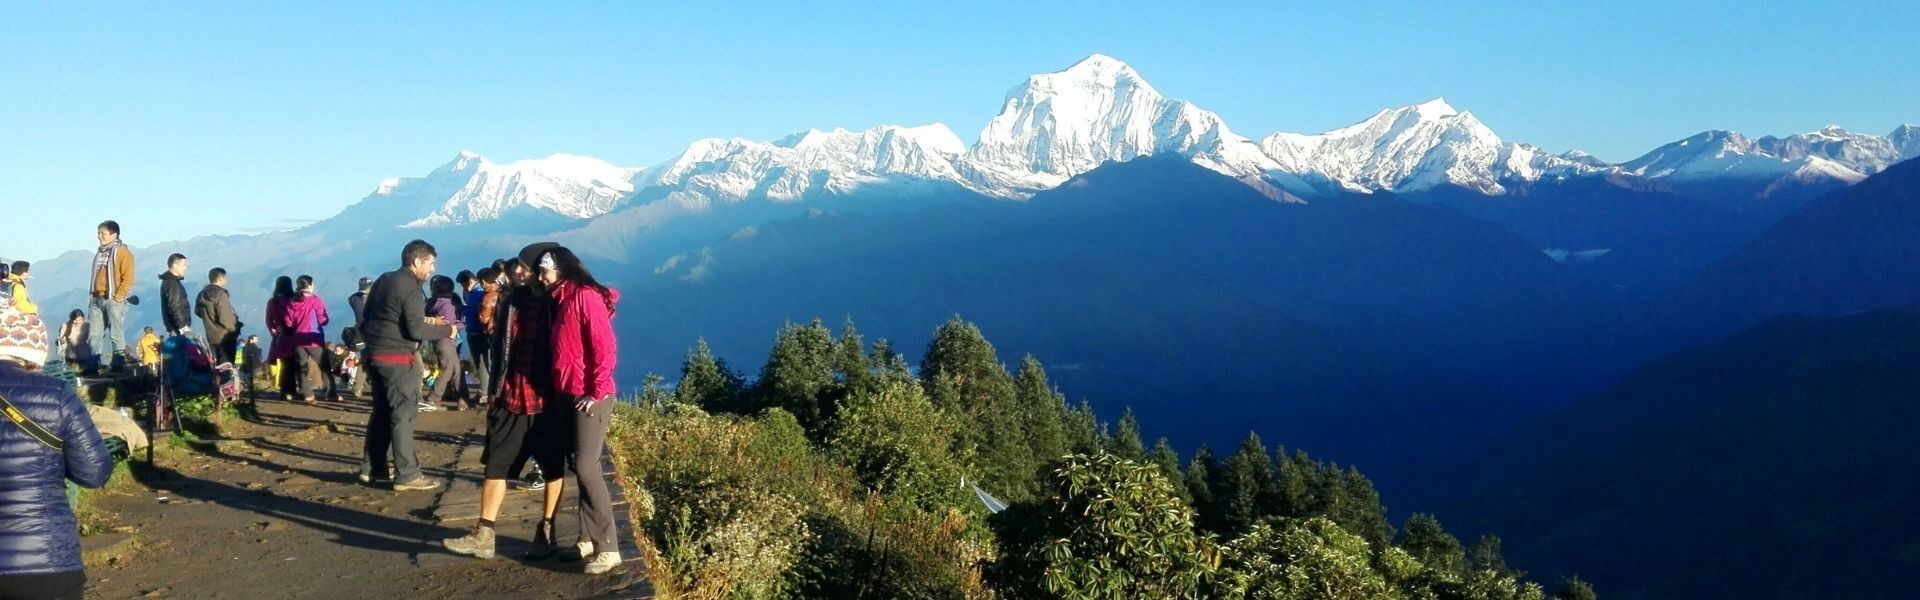 Annapurna Trek in Nepal